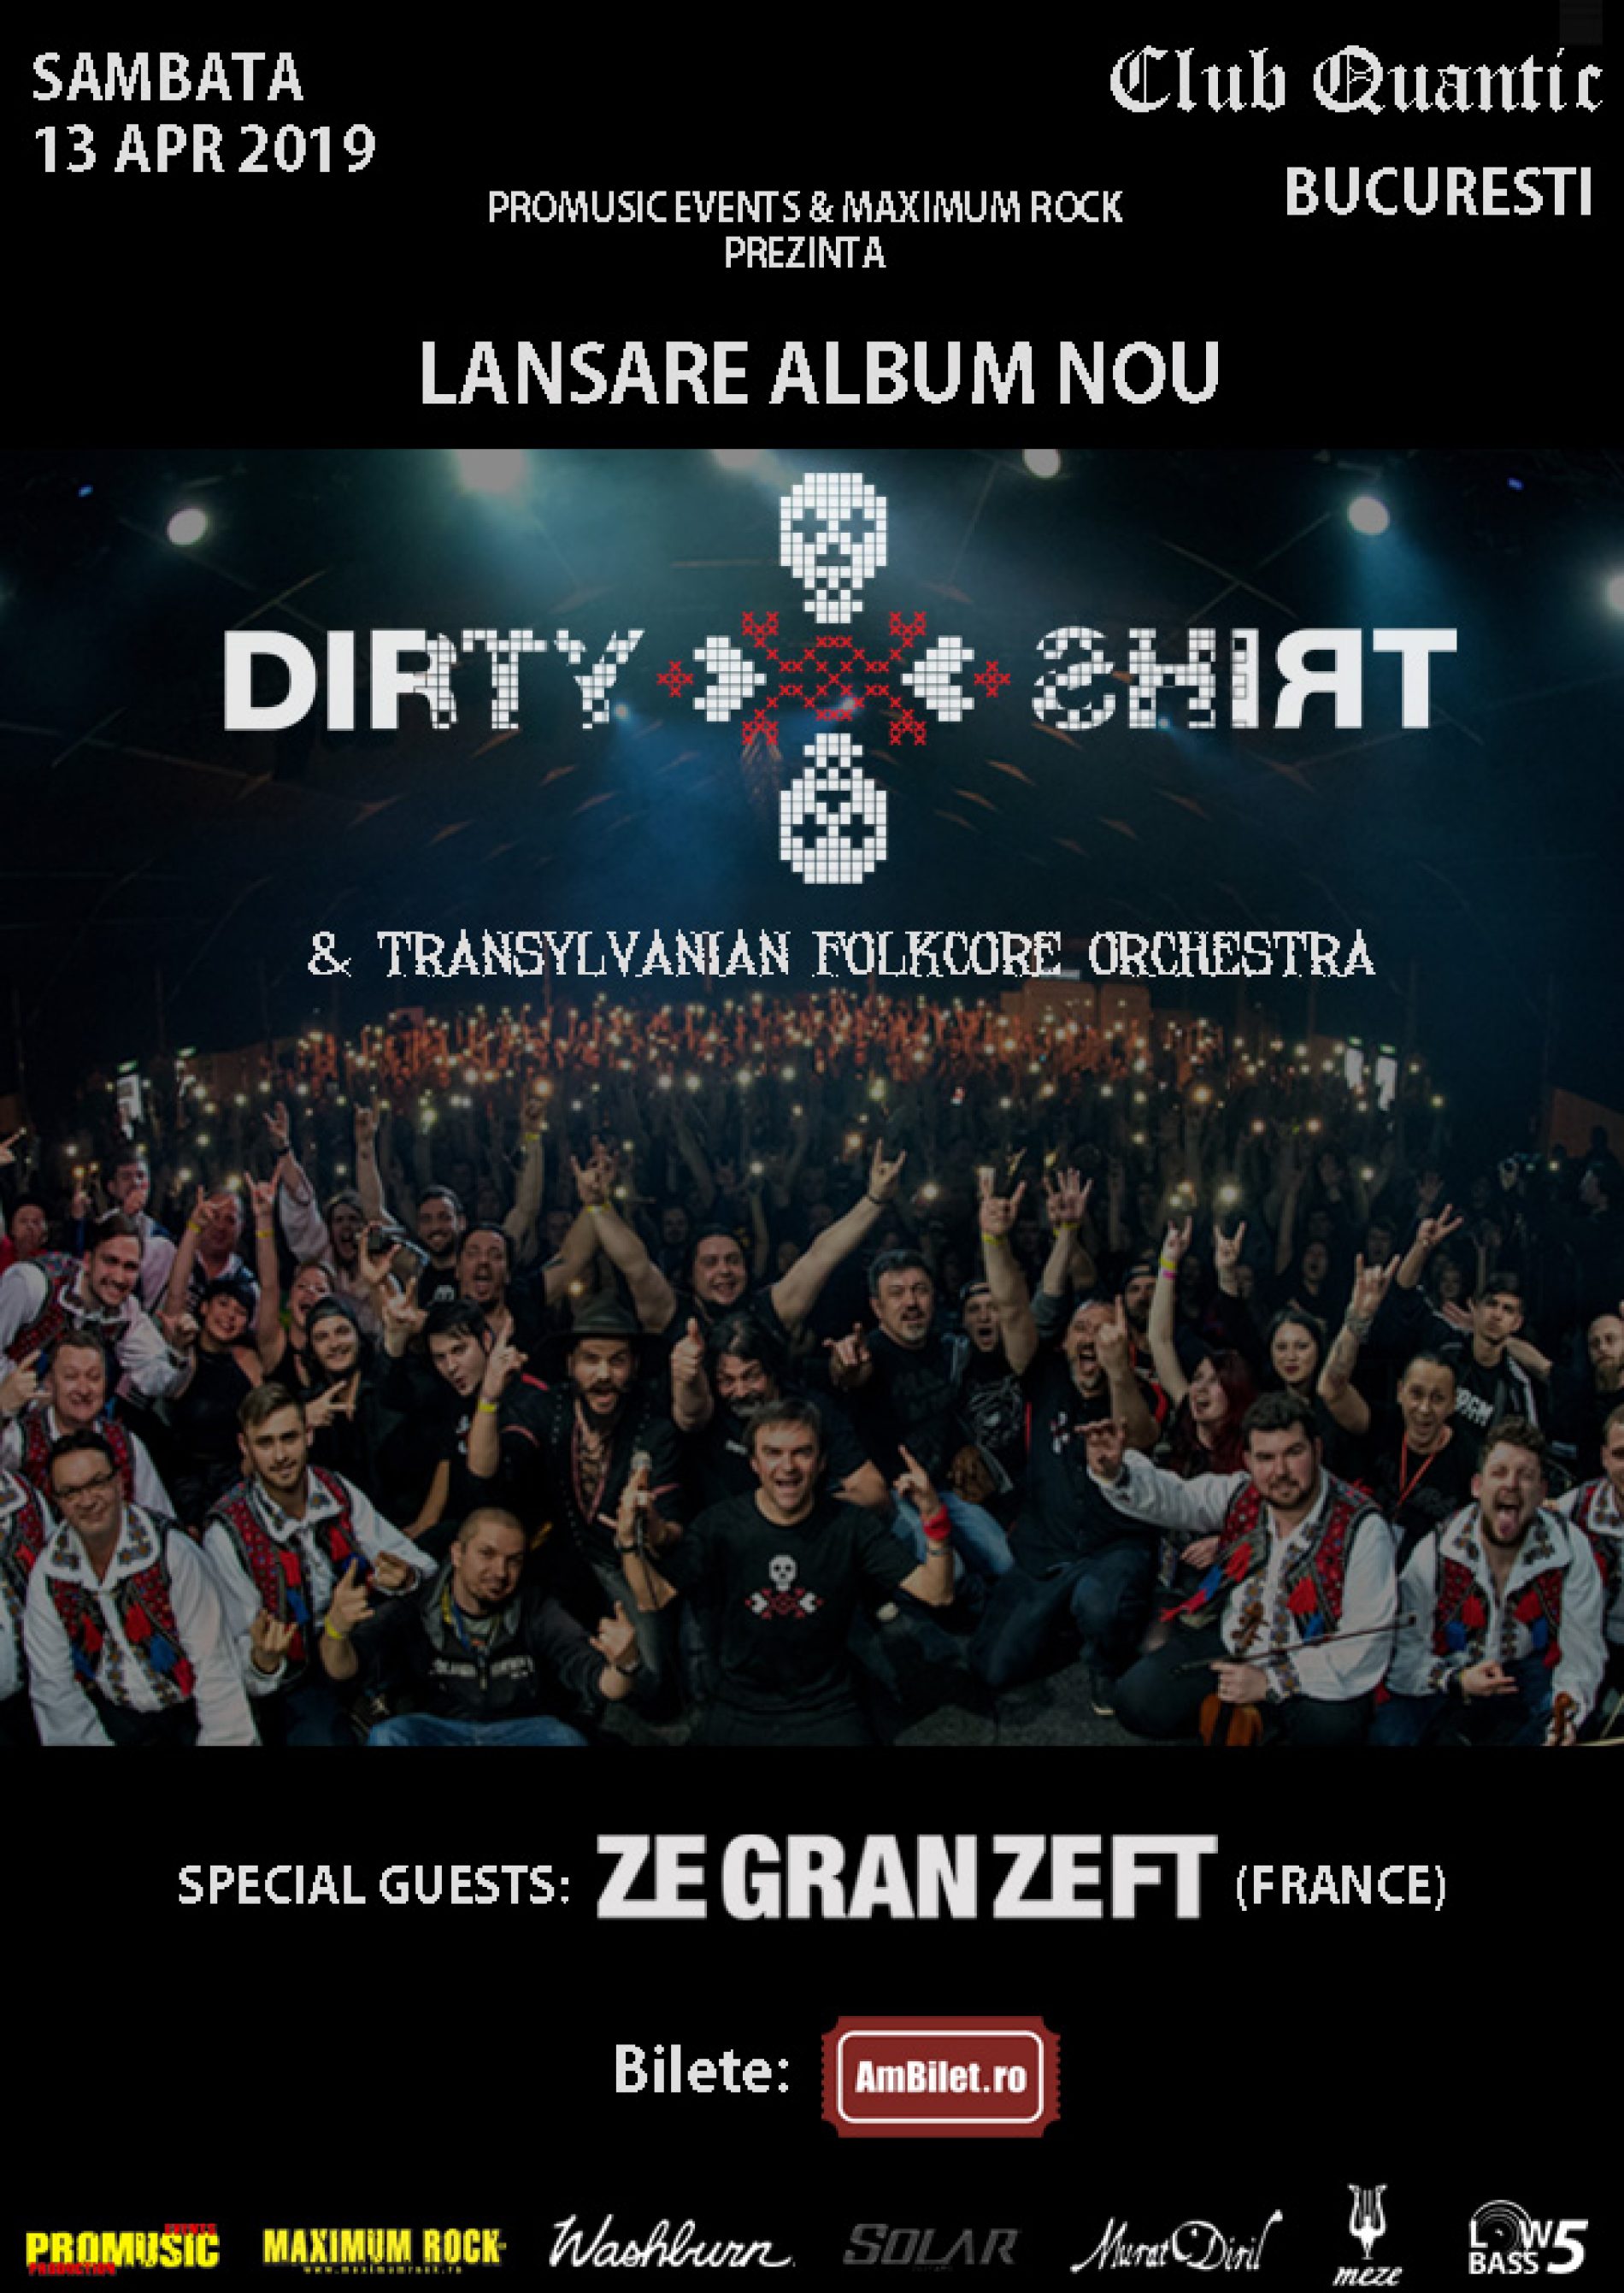 Concerte Dirty Shirt la Brașov și București: Program și reguli de acces